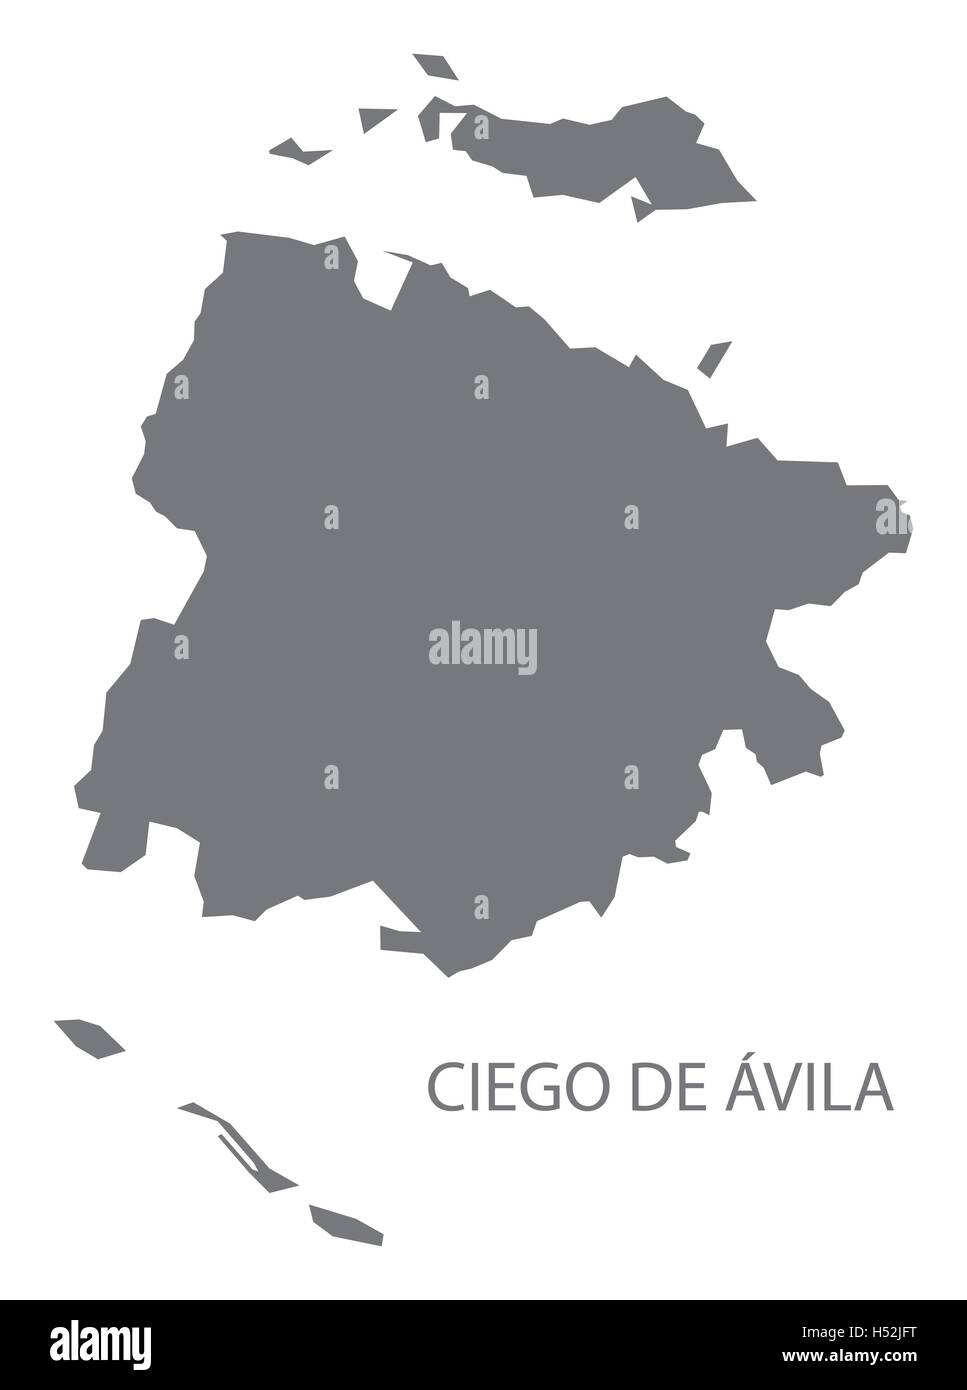 Ciego de Avila Kuba Karte grau Stock Vektor